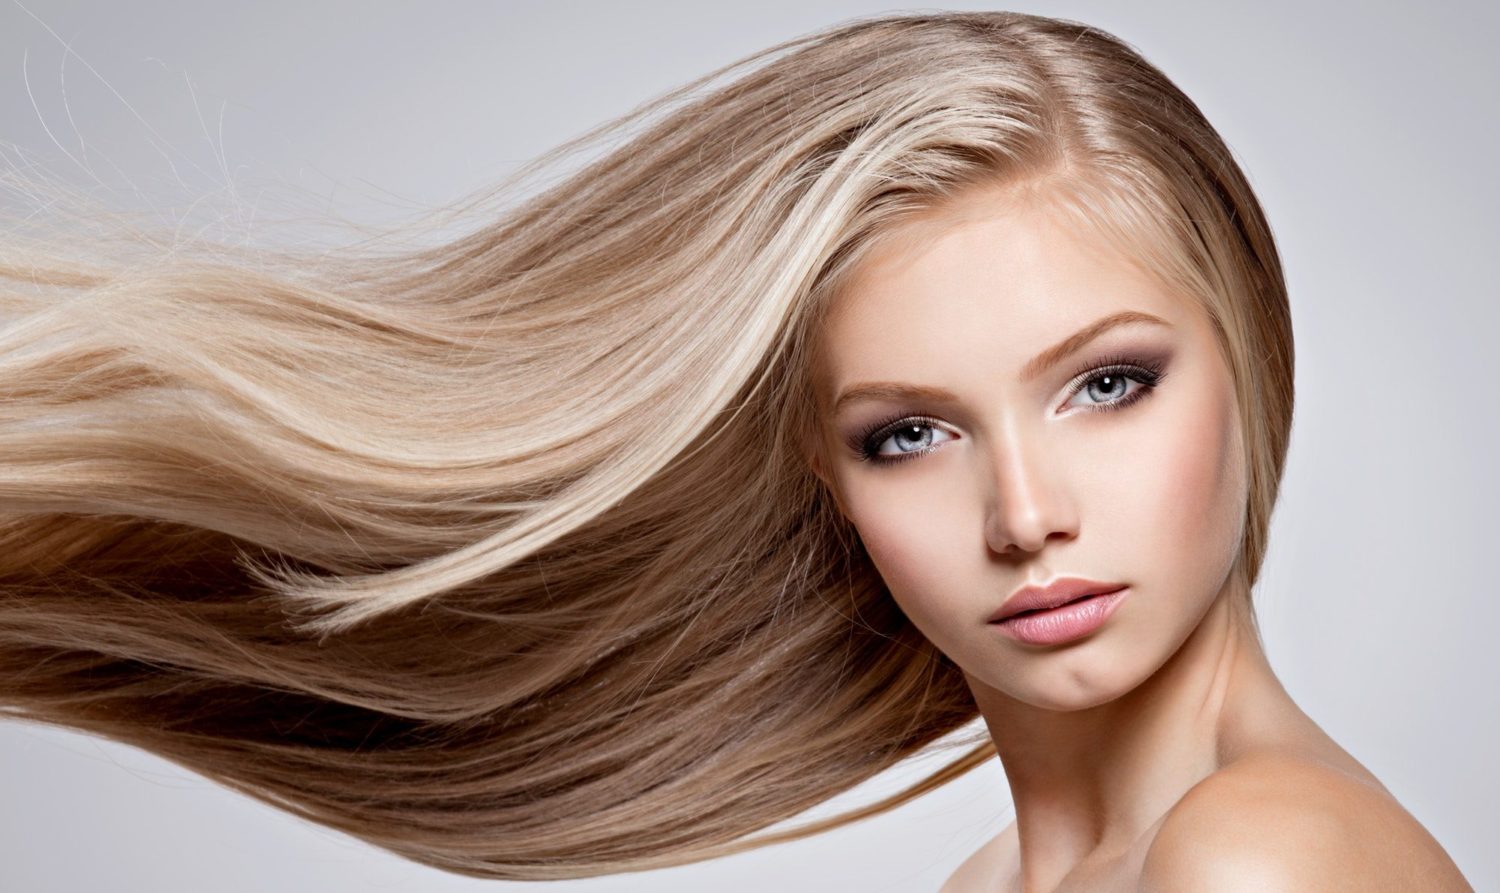 Dầu xả và thuốc nhuộm tóc là combo hoàn hảo cho mái tóc của bạn. Dầu xả sẽ giúp tóc mềm mượt hơn, trong khi thuốc nhuộm sẽ giúp bạn thay đổi màu sắc và làm mới phong cách. Hãy xem hướng dẫn này để biết cách sử dụng đúng cách và có được kết quả tuyệt vời cho mái tóc của mình.